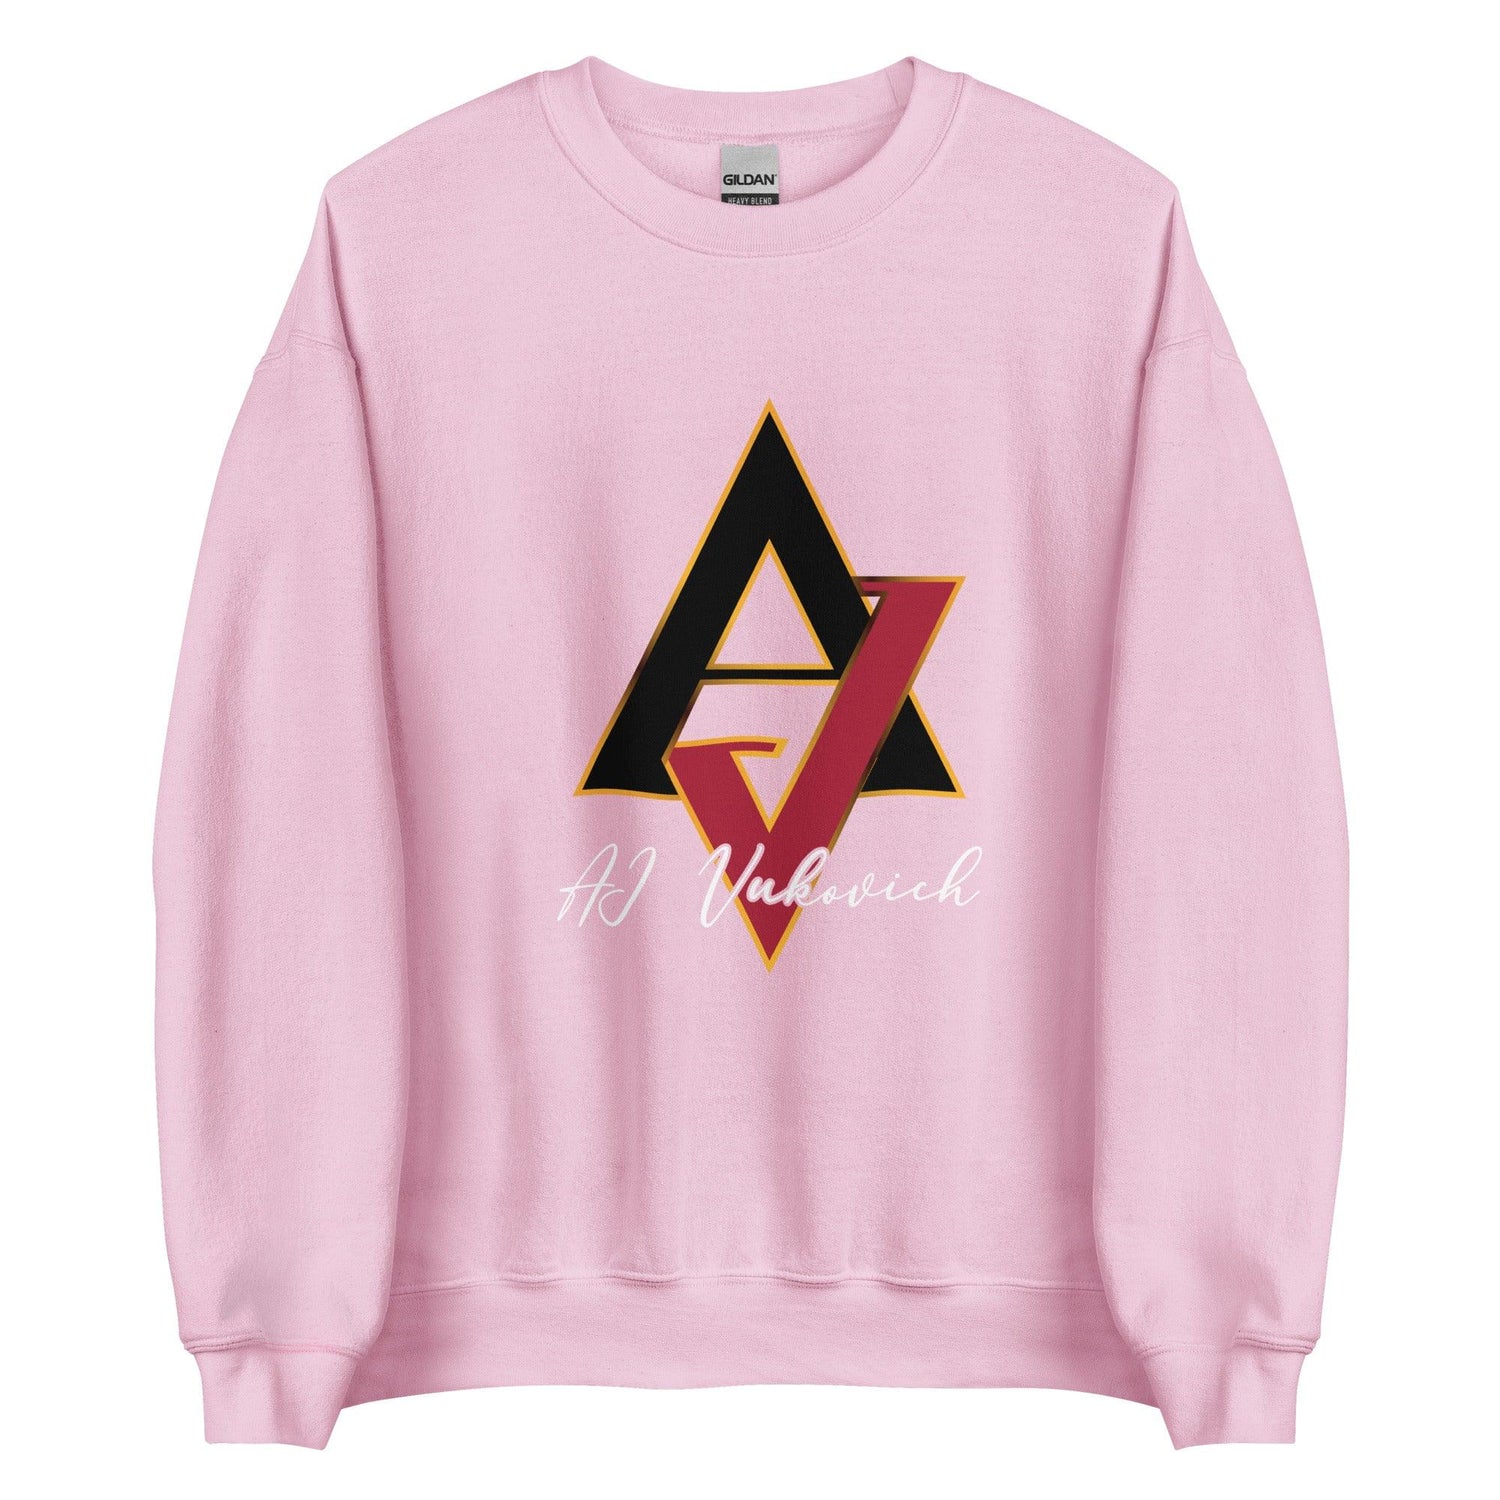 AJ Vukovich “Spotlight” Sweatshirt - Fan Arch